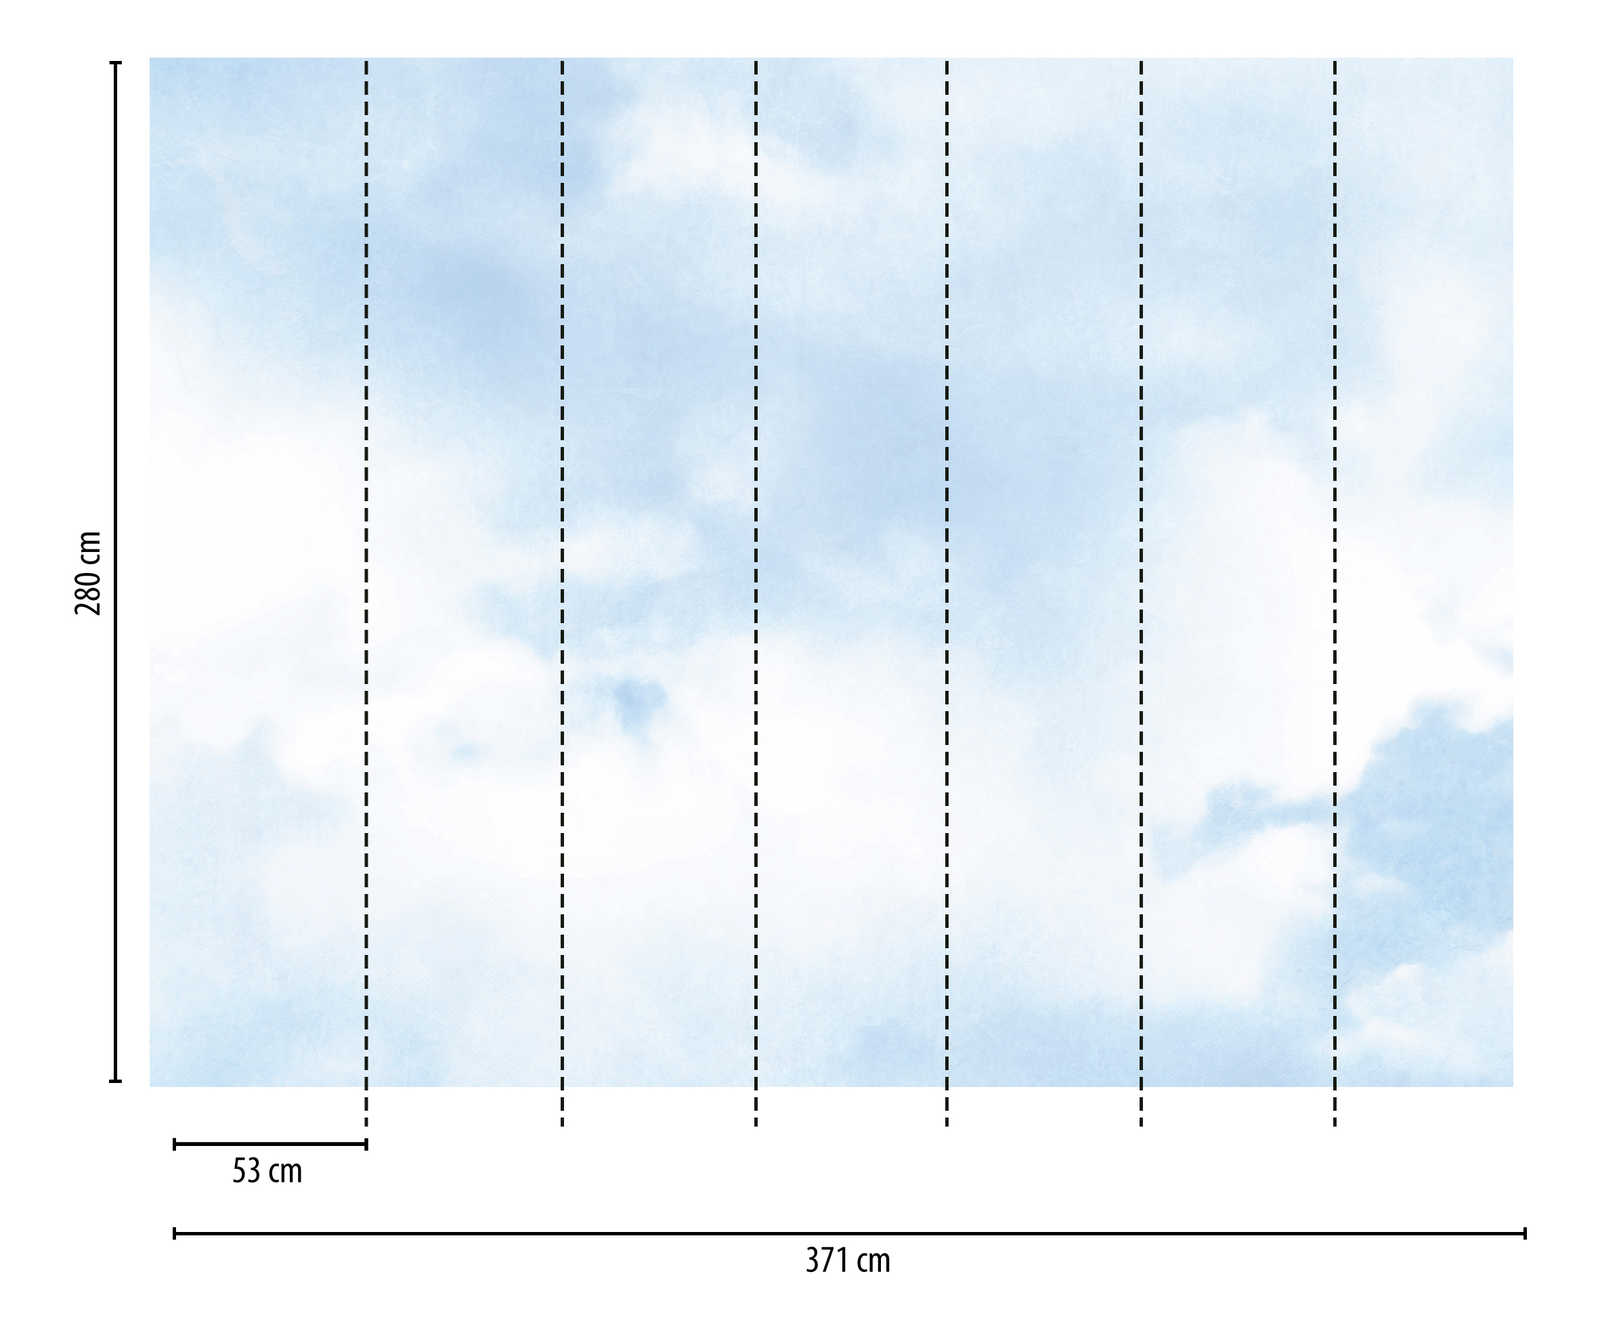             behang nieuwigheid | motief behang blauwe lucht met wolken
        